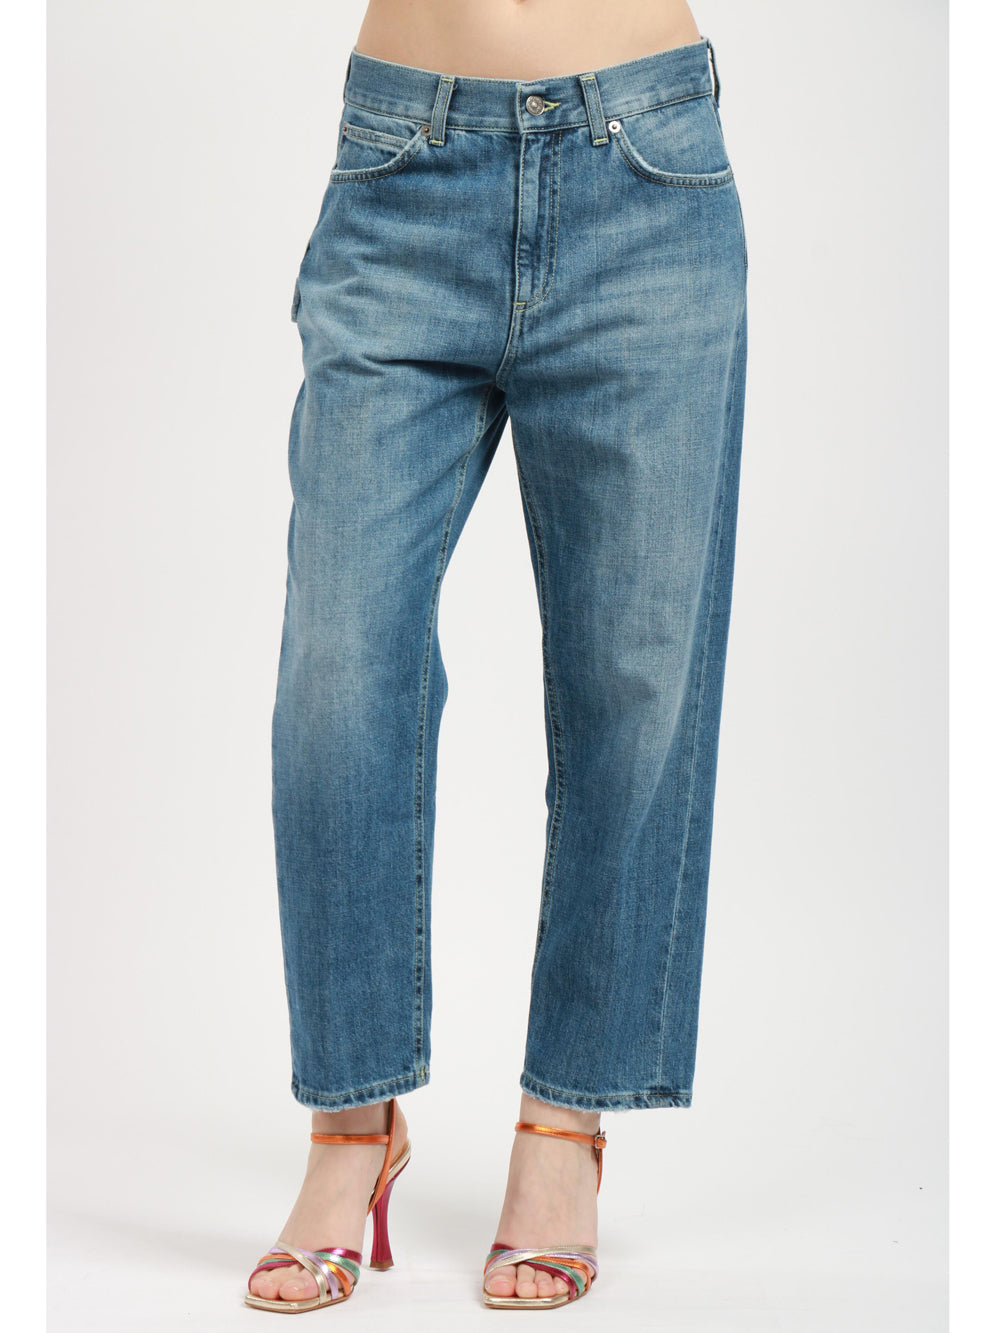 DONDUP Jeans Carrie in Denim Blu con Tasche Worker Denim